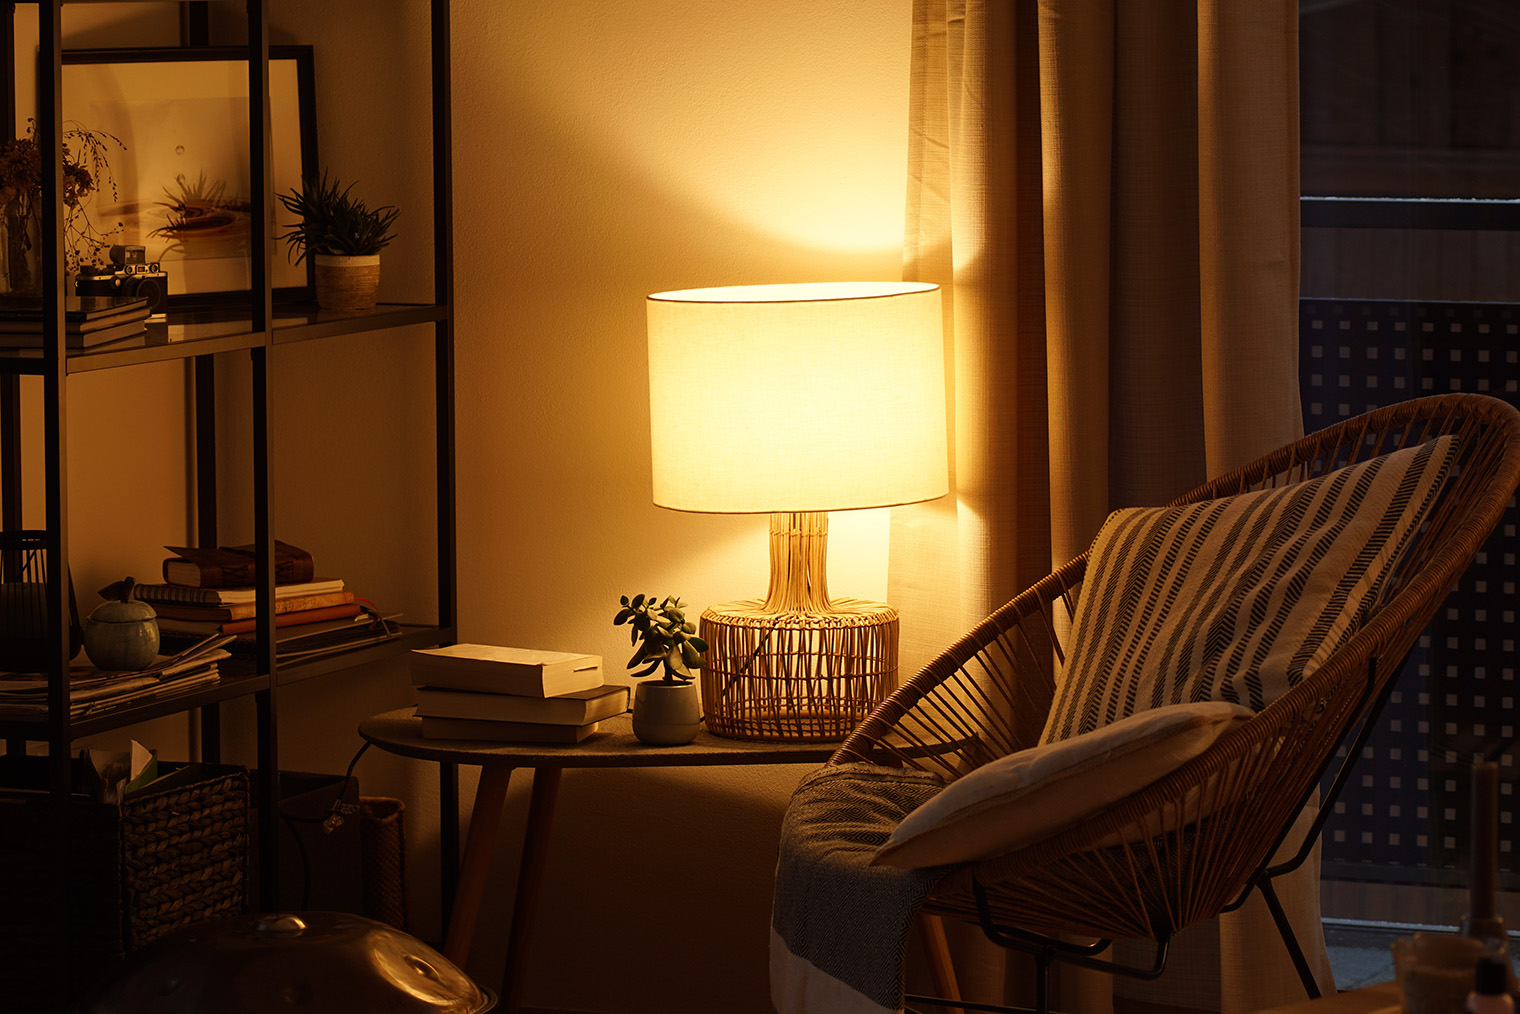 Мягкий свет способствует уединению и расслаблению, при этом из⁠-⁠за близости лампы дает достаточно света для чтения. Фотография: TG23 / Shutterstock / FOTODOM